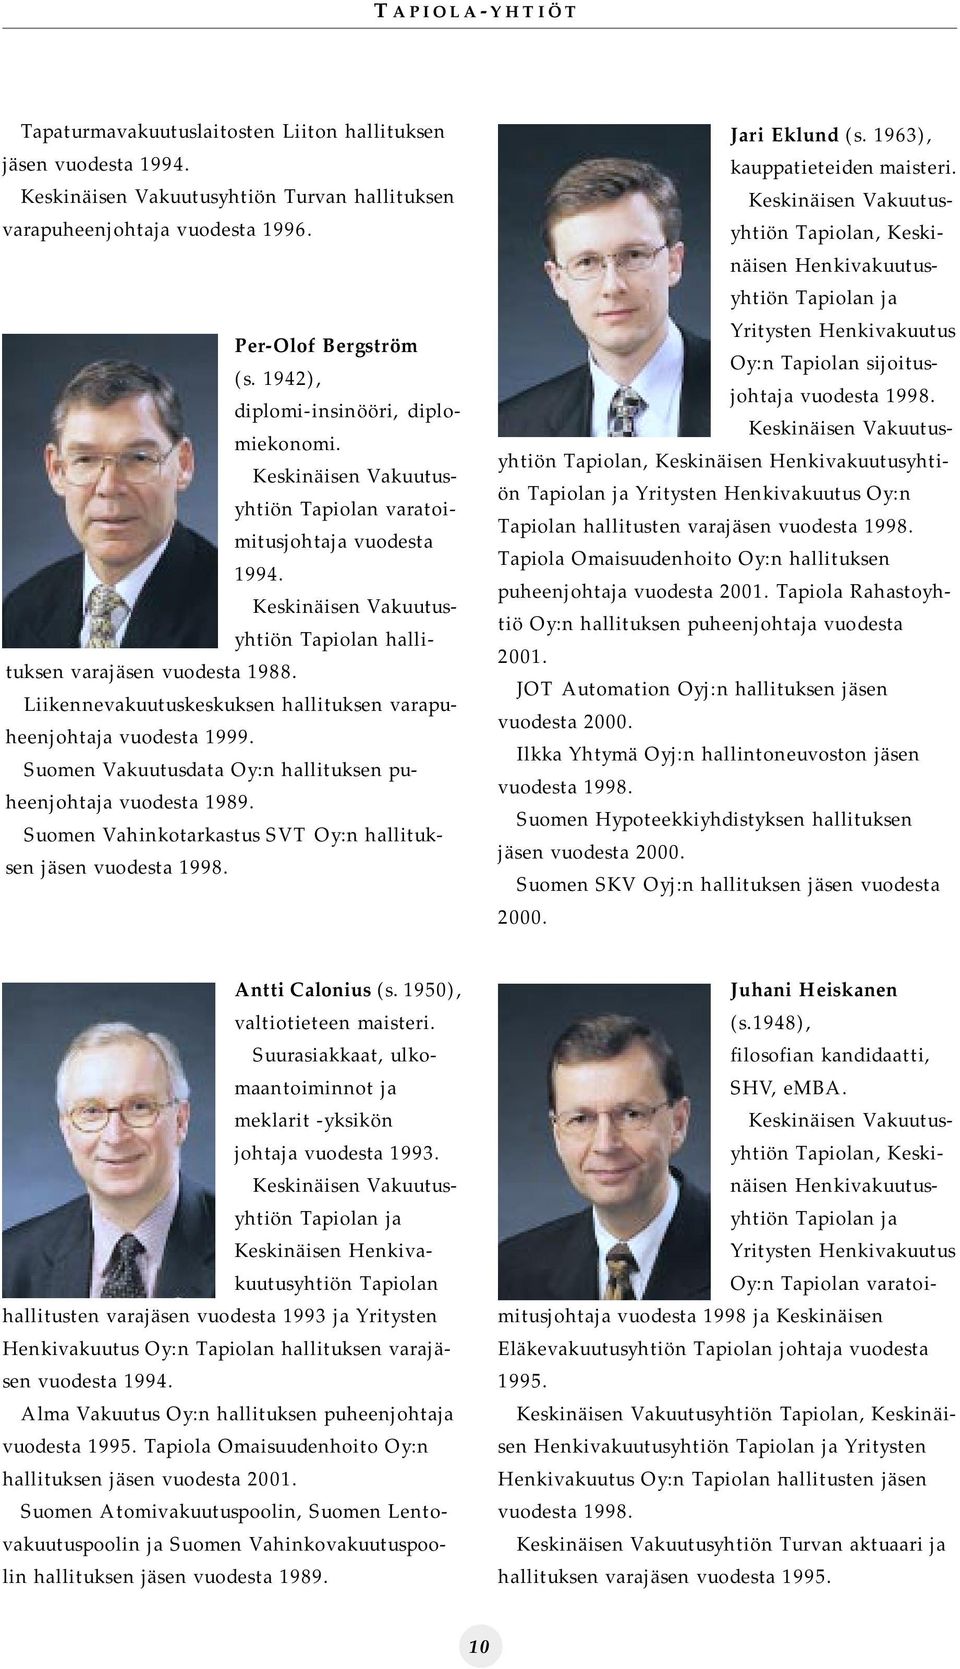 Liikennevakuutuskeskuksen hallituksen varapuheenjohtaja vuodesta 1999. Suomen Vakuutusdata Oy:n hallituksen puheenjohtaja vuodesta 1989.